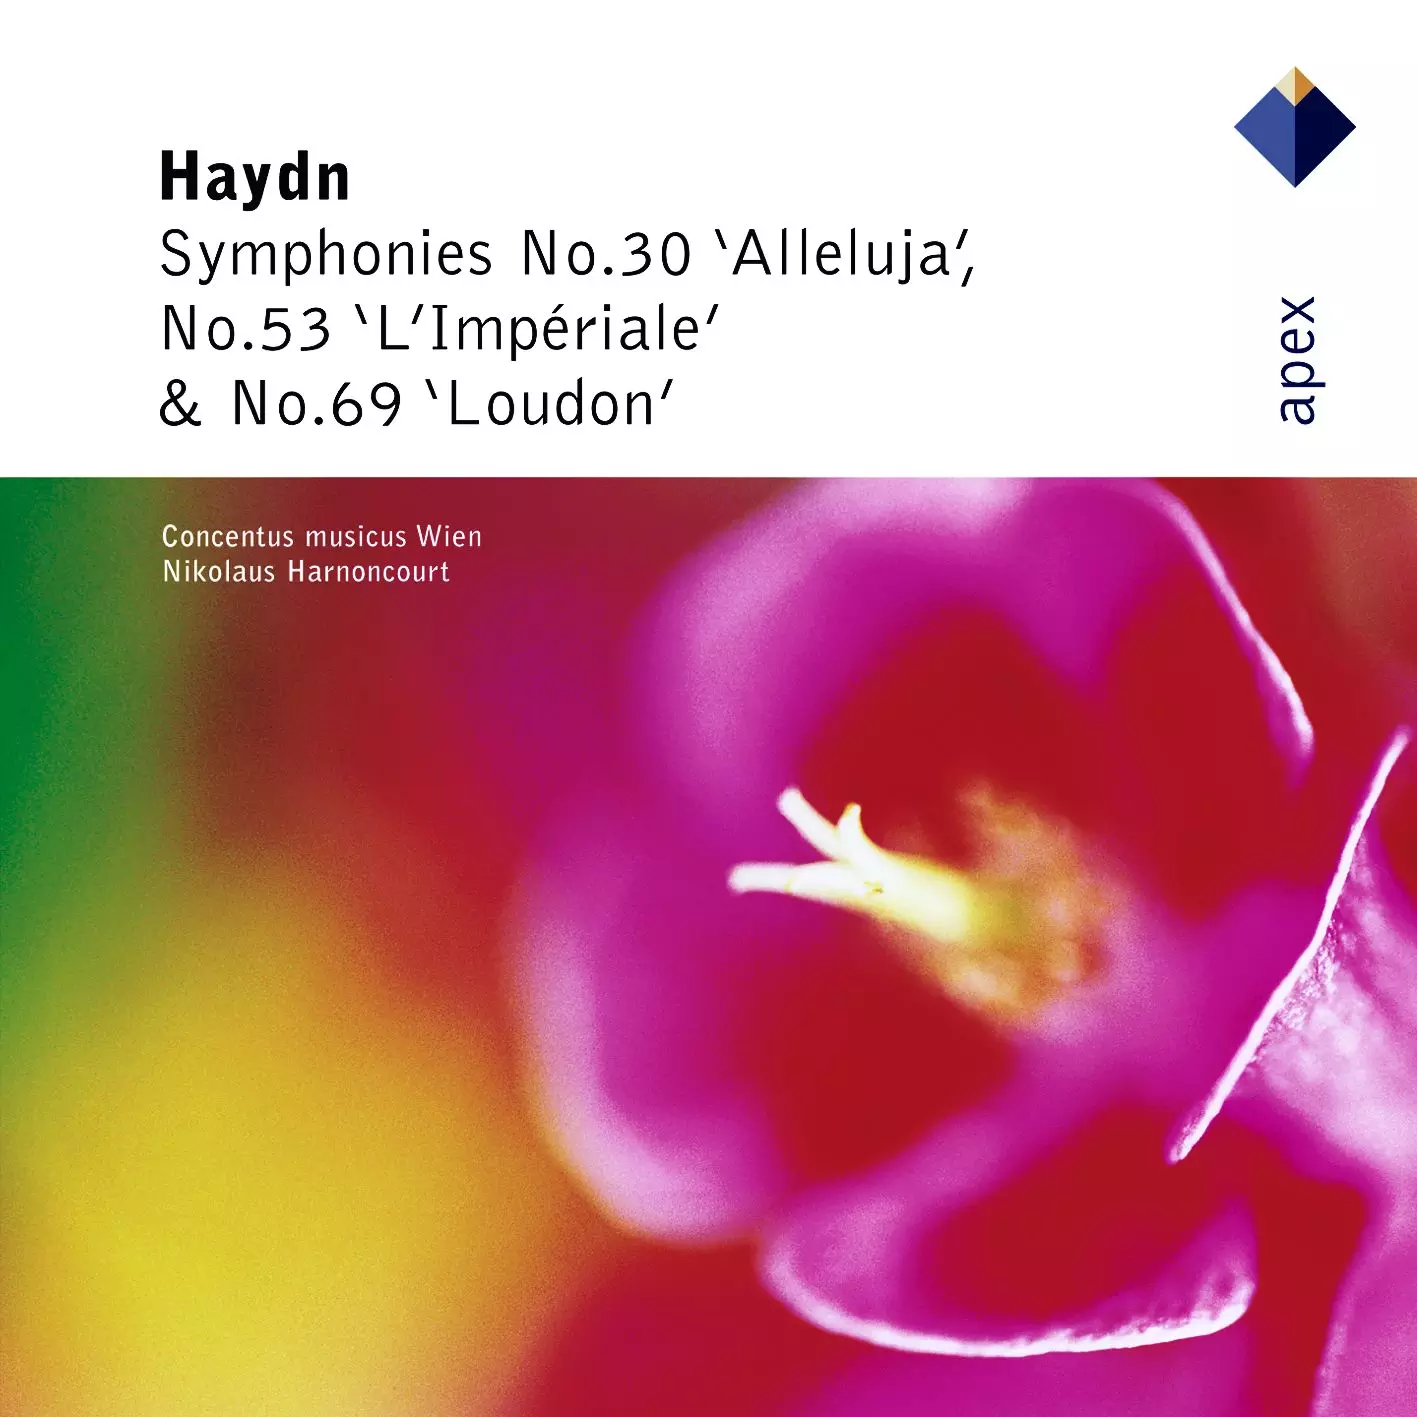 Haydn: Symphonies Nos 30, 53 & 69